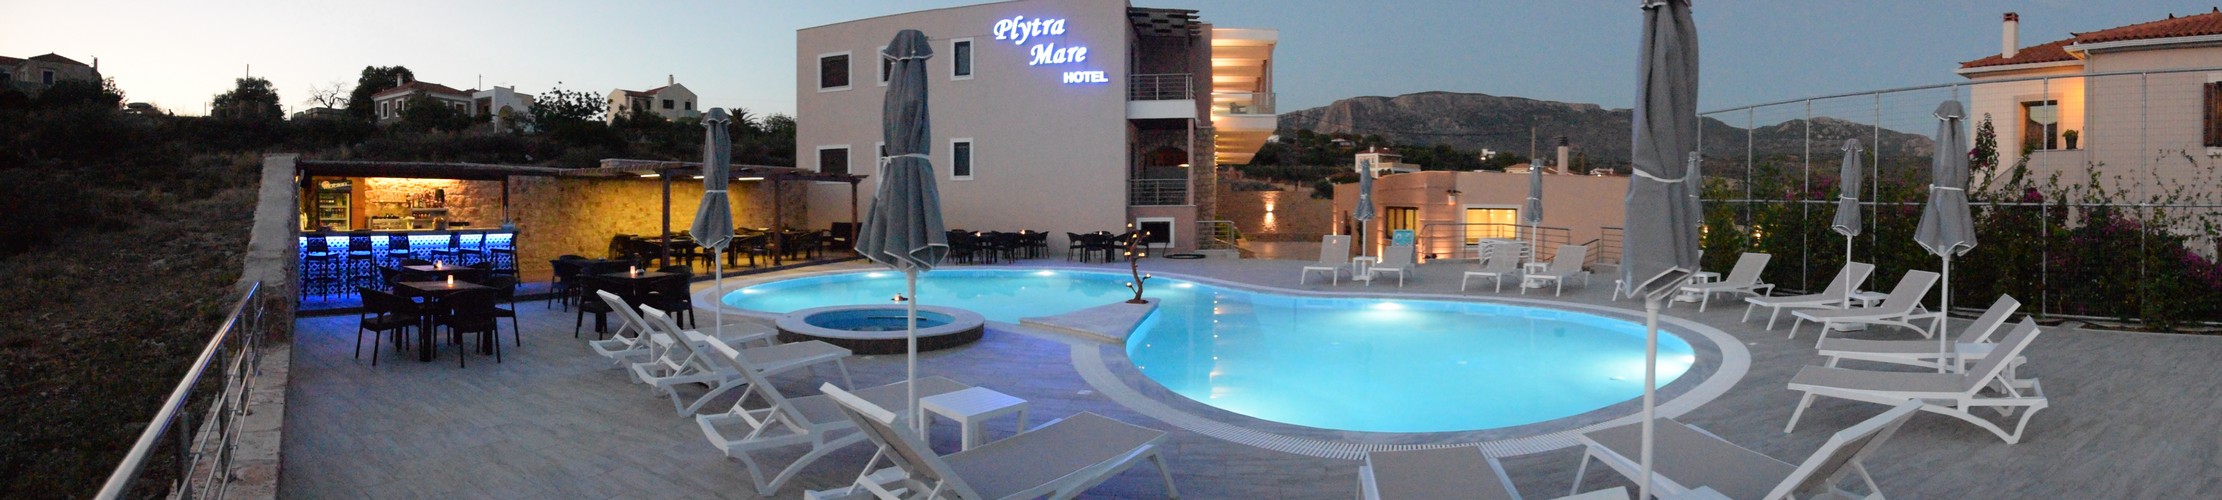 hotel_plytra-mare1